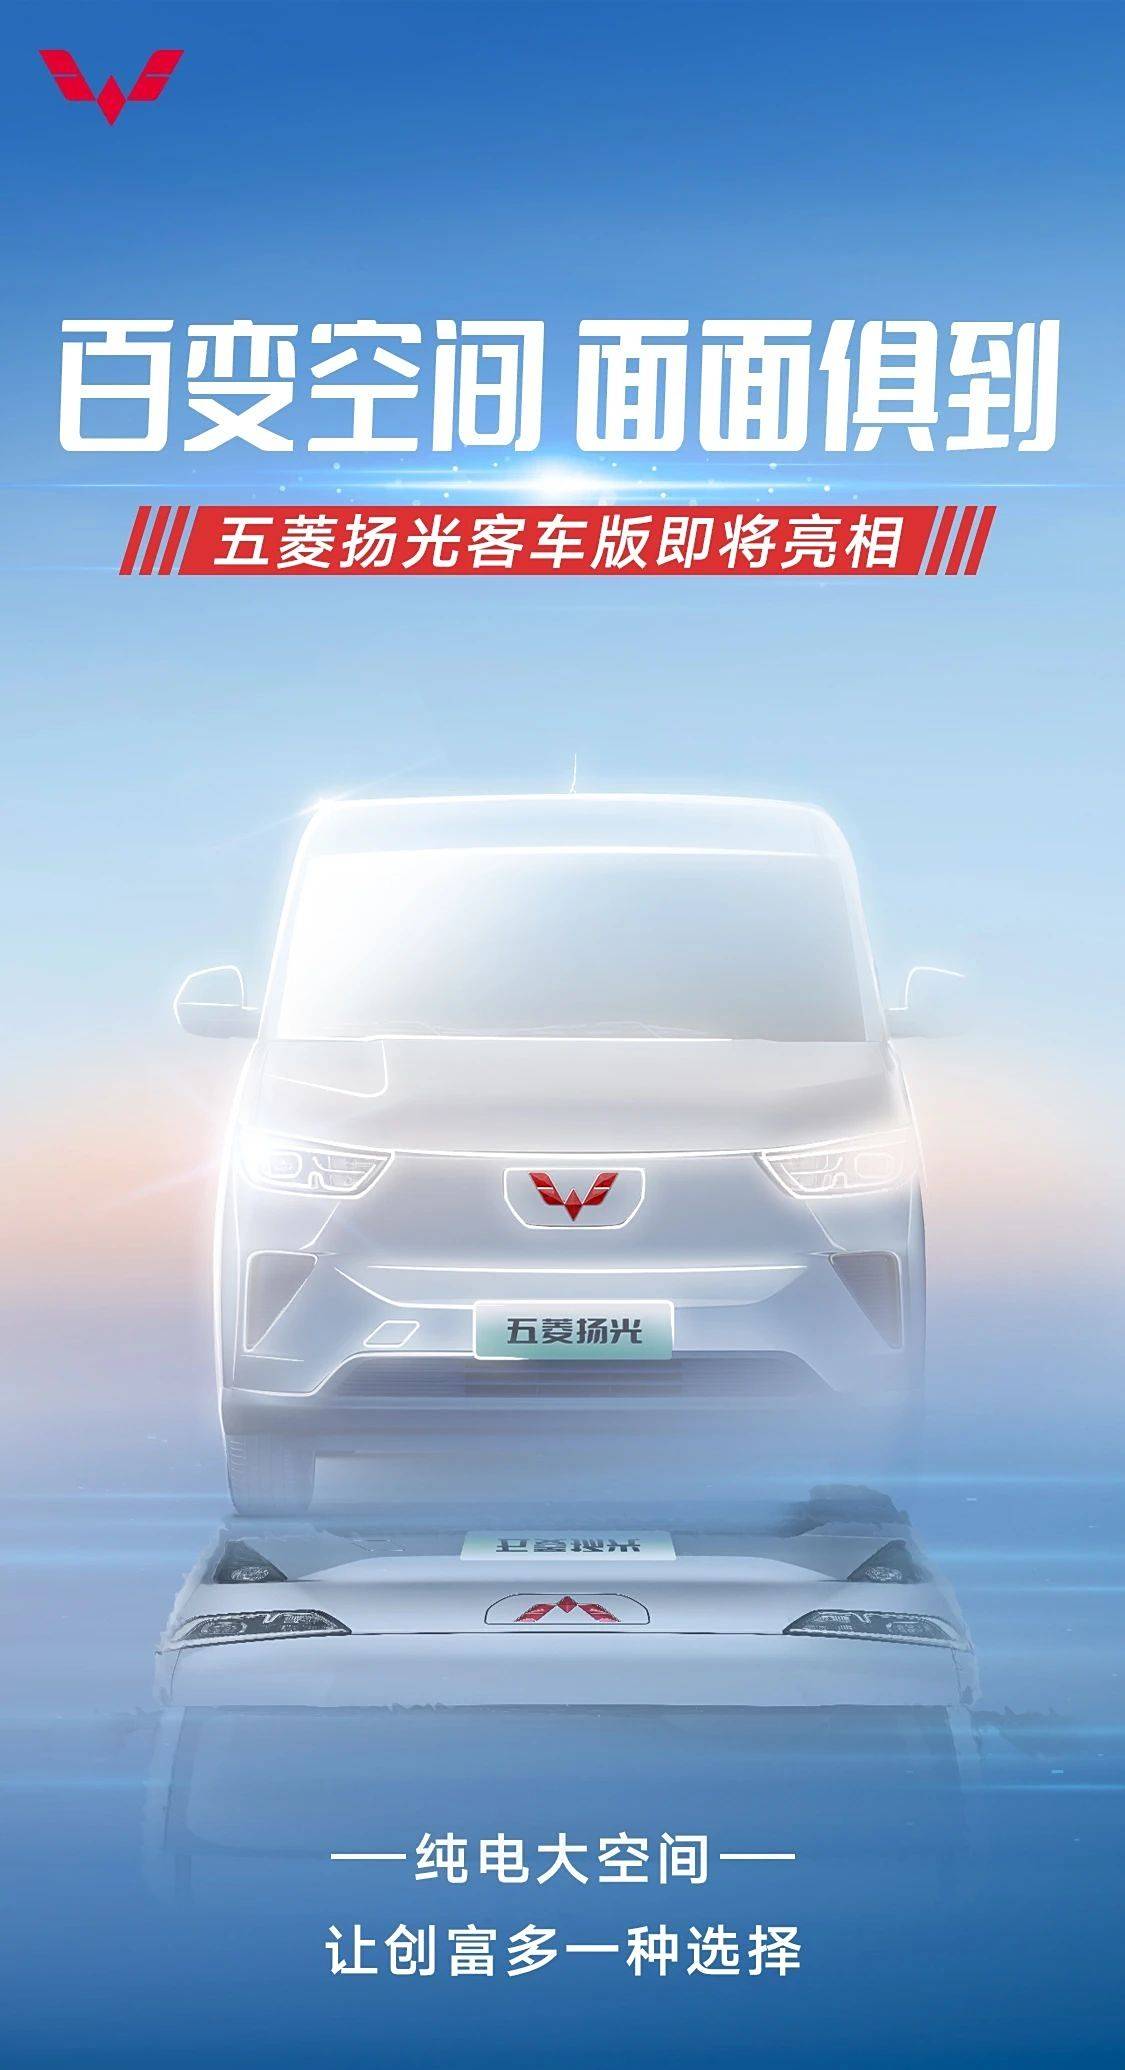 纯电动五菱杨光客车版将亮相_搜狐汽车_搜狐。com